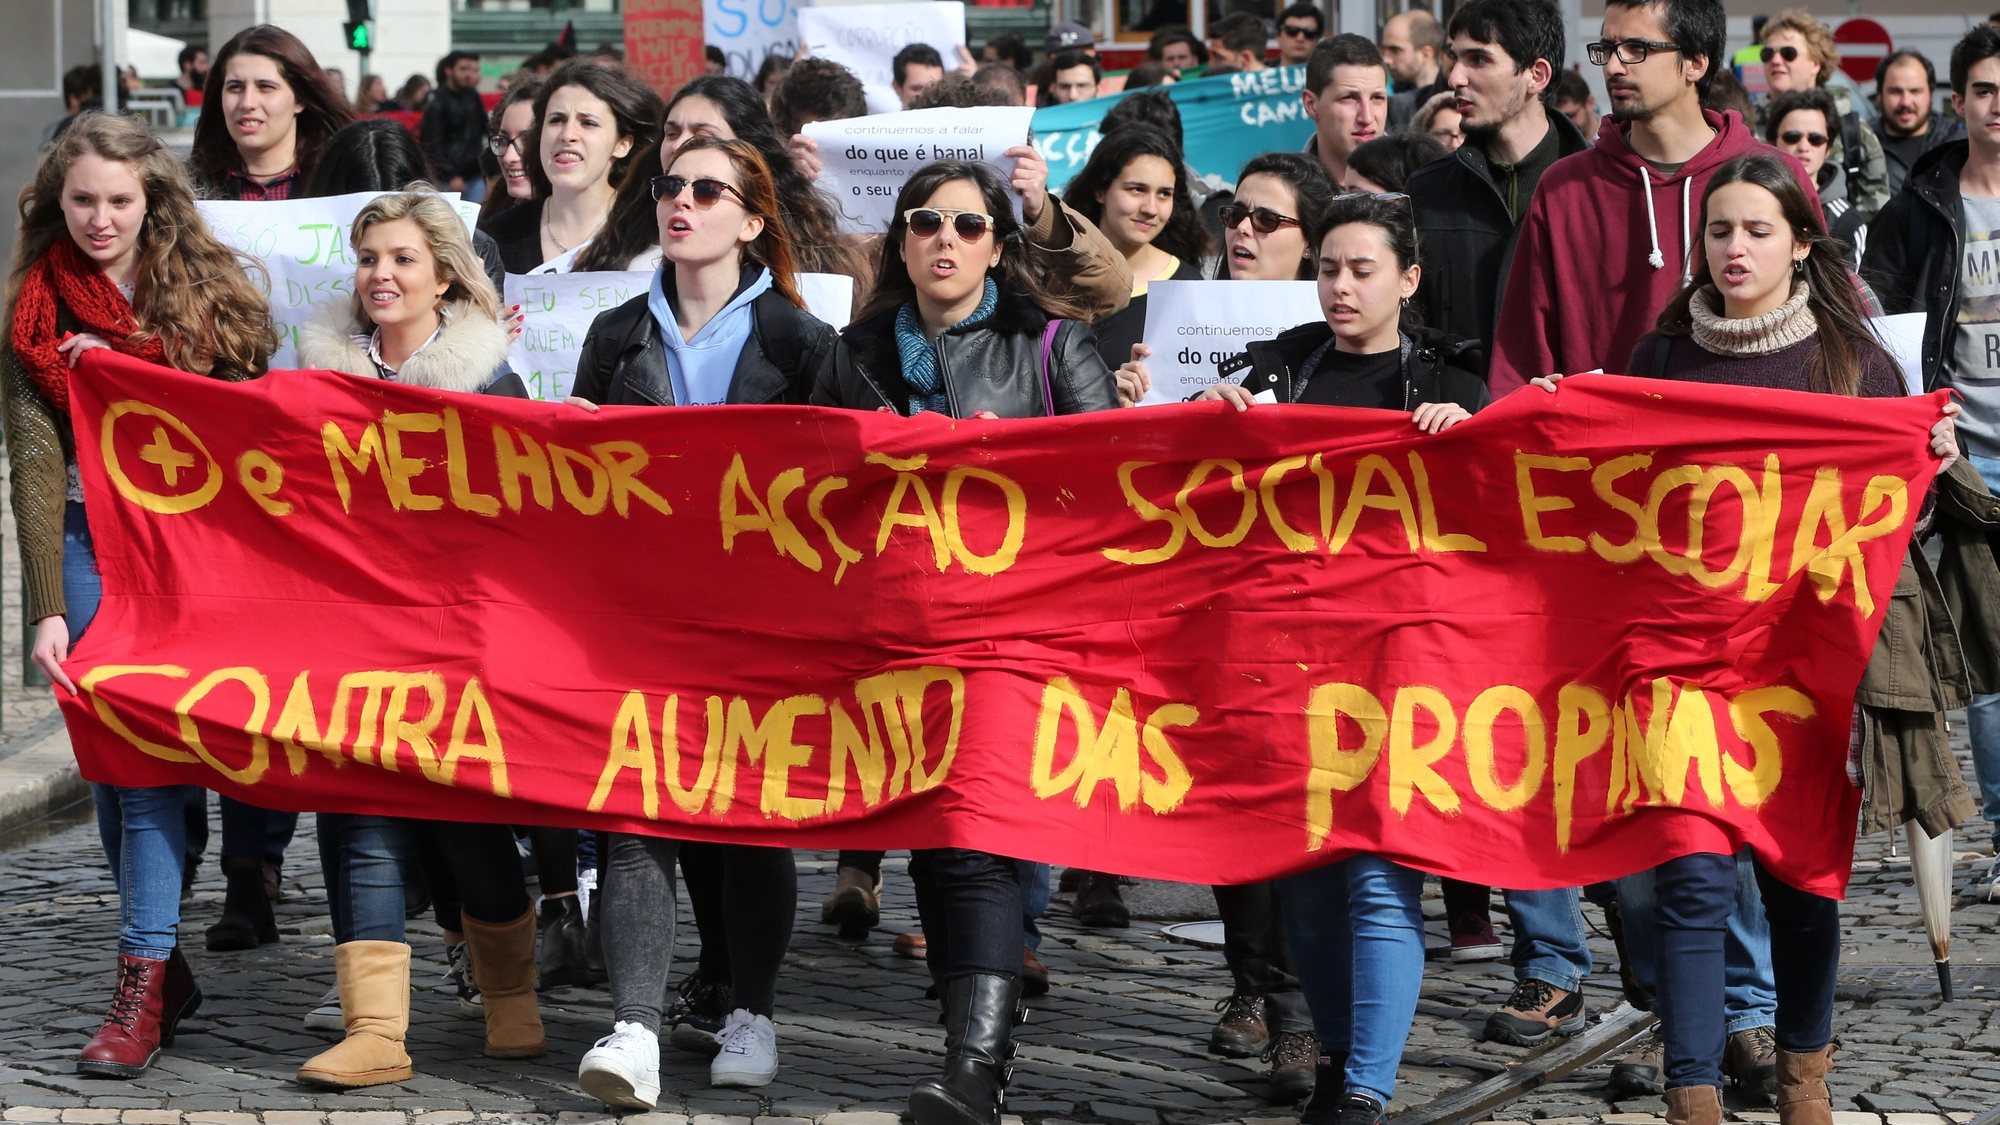 Manifestantes do ensino superior durante marcha de protesto entre o Largo do Carmo e a Assembleia da República,15 março 2016, em Lisboa,  sob o lema de “Mais e Melhor Acção Social Escolar, Não ao Aumento das Propinas”, a propósito do Dia do Estudante (24 março) e da votação do Orçamento do Estado 2016.     MANUEL DE ALMEIDA / LUSA